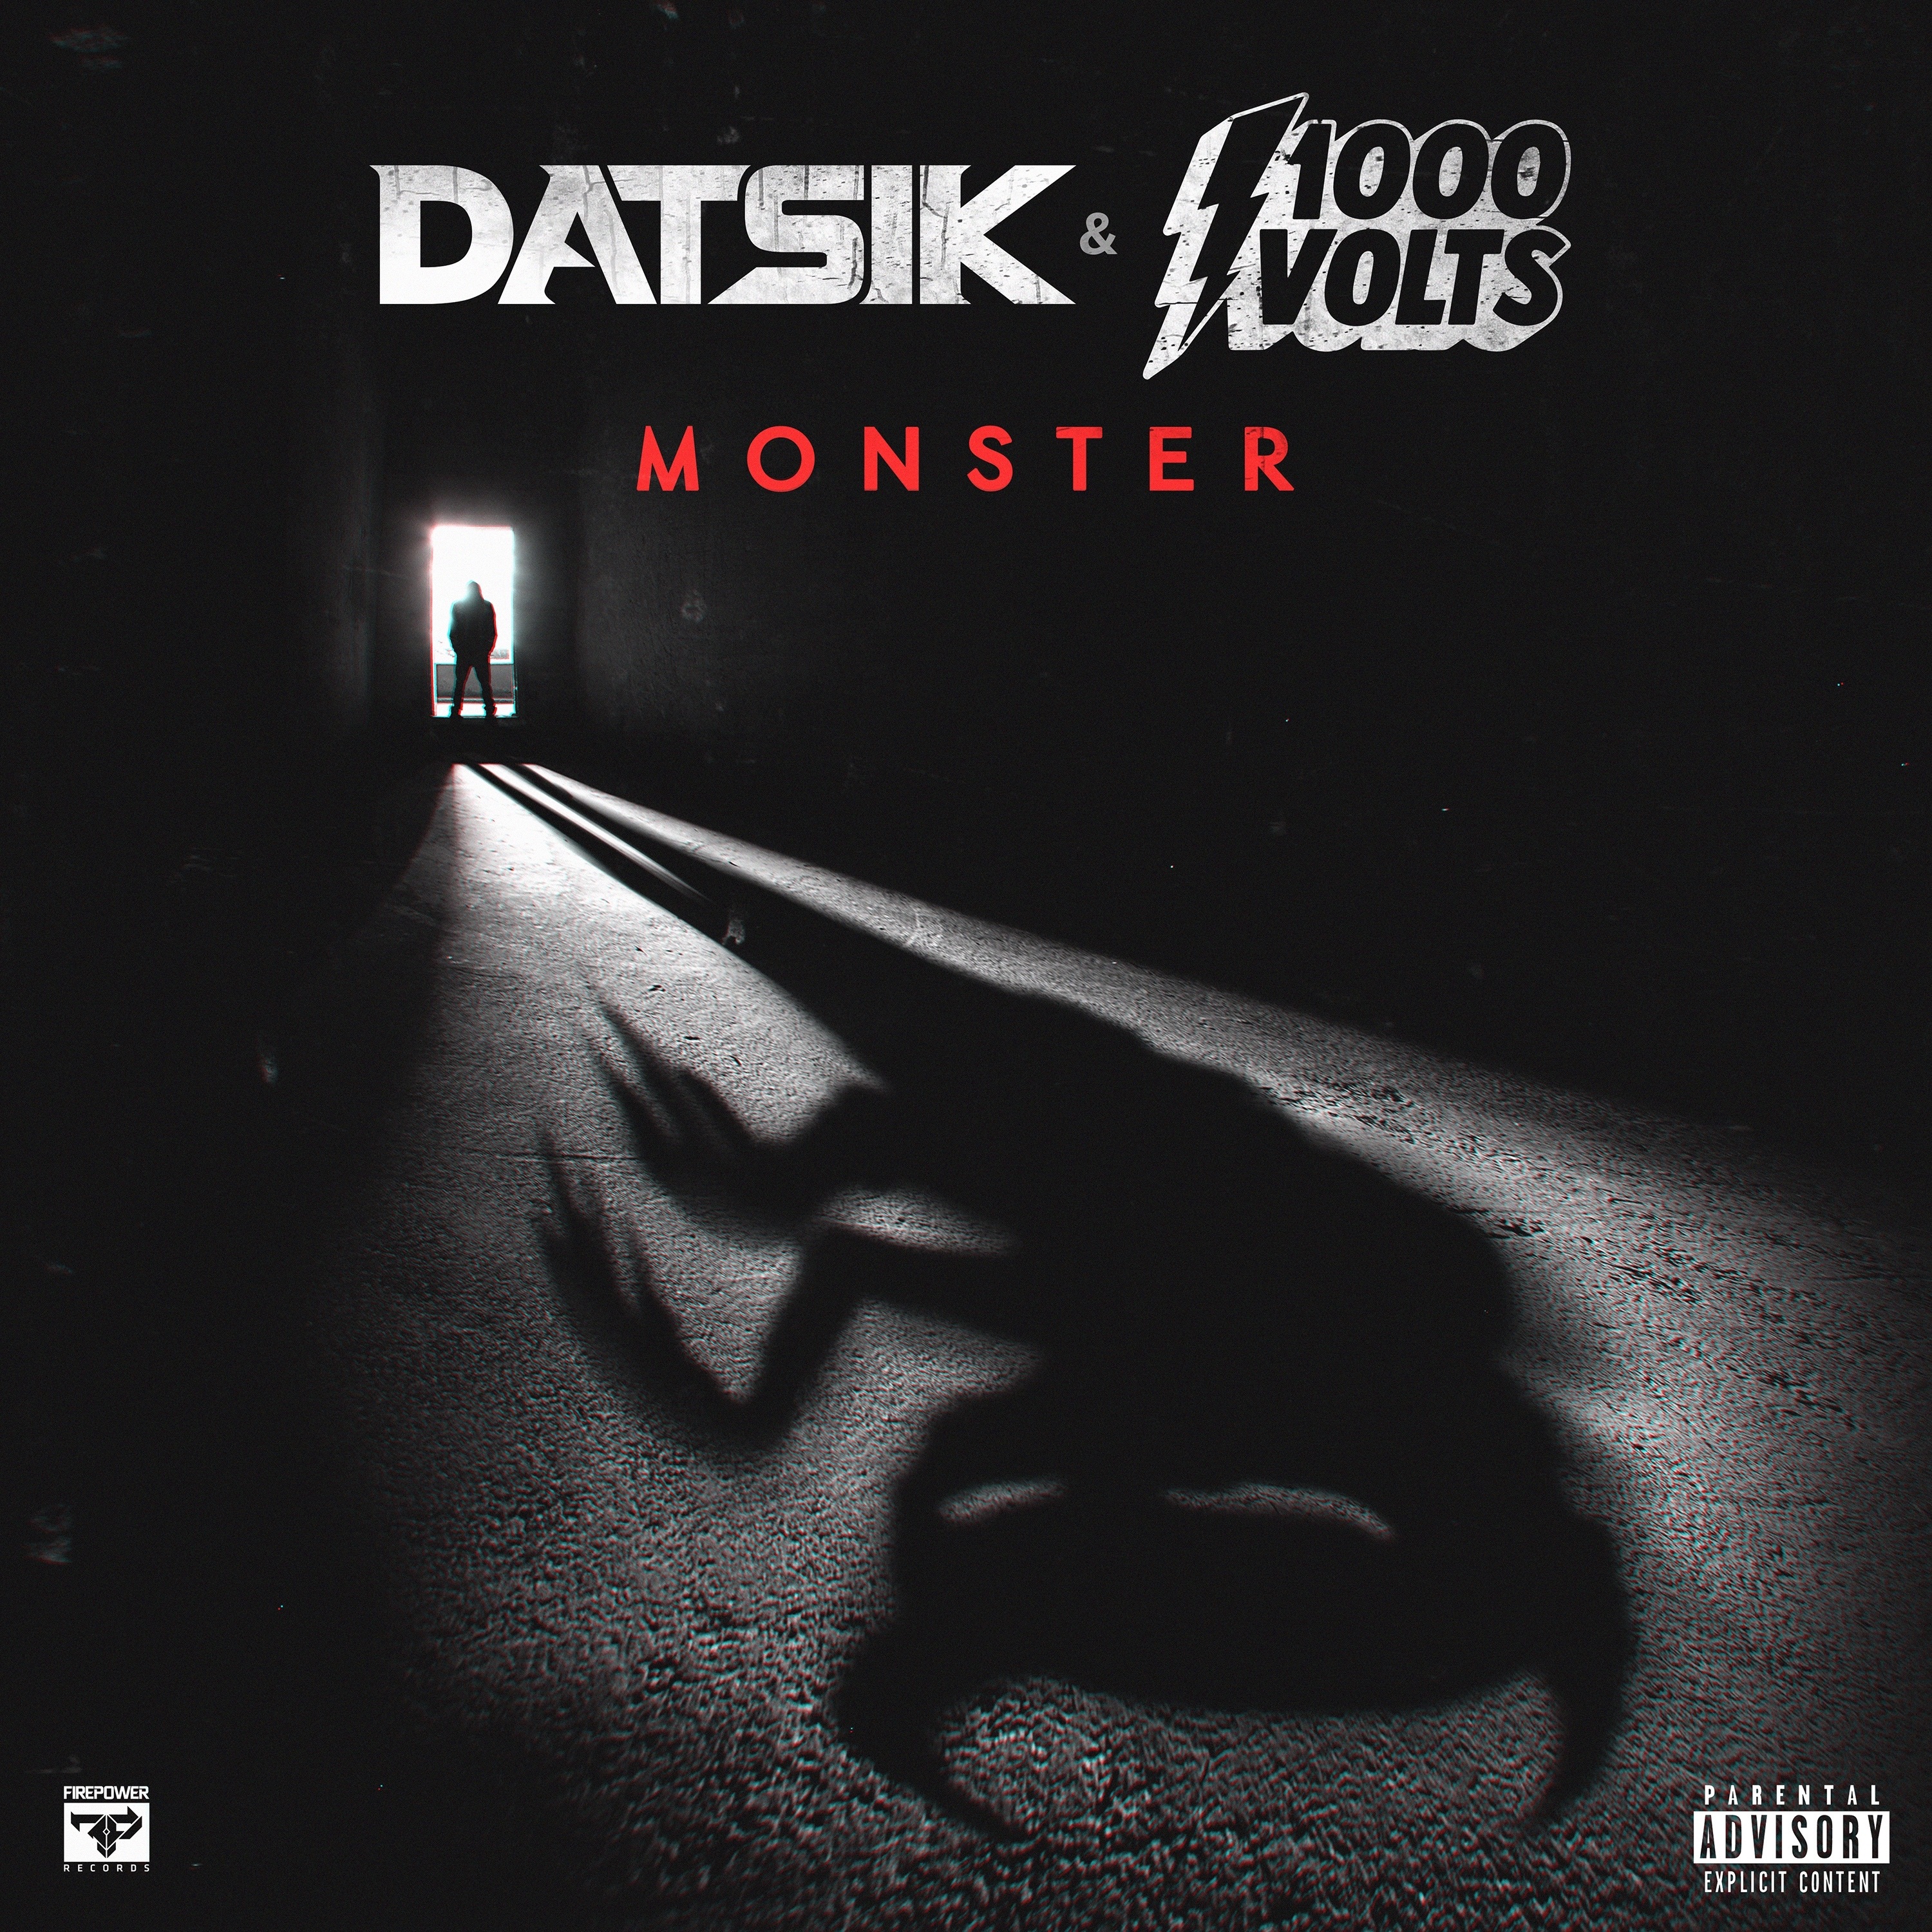 Datsik & 1000volts - Monster